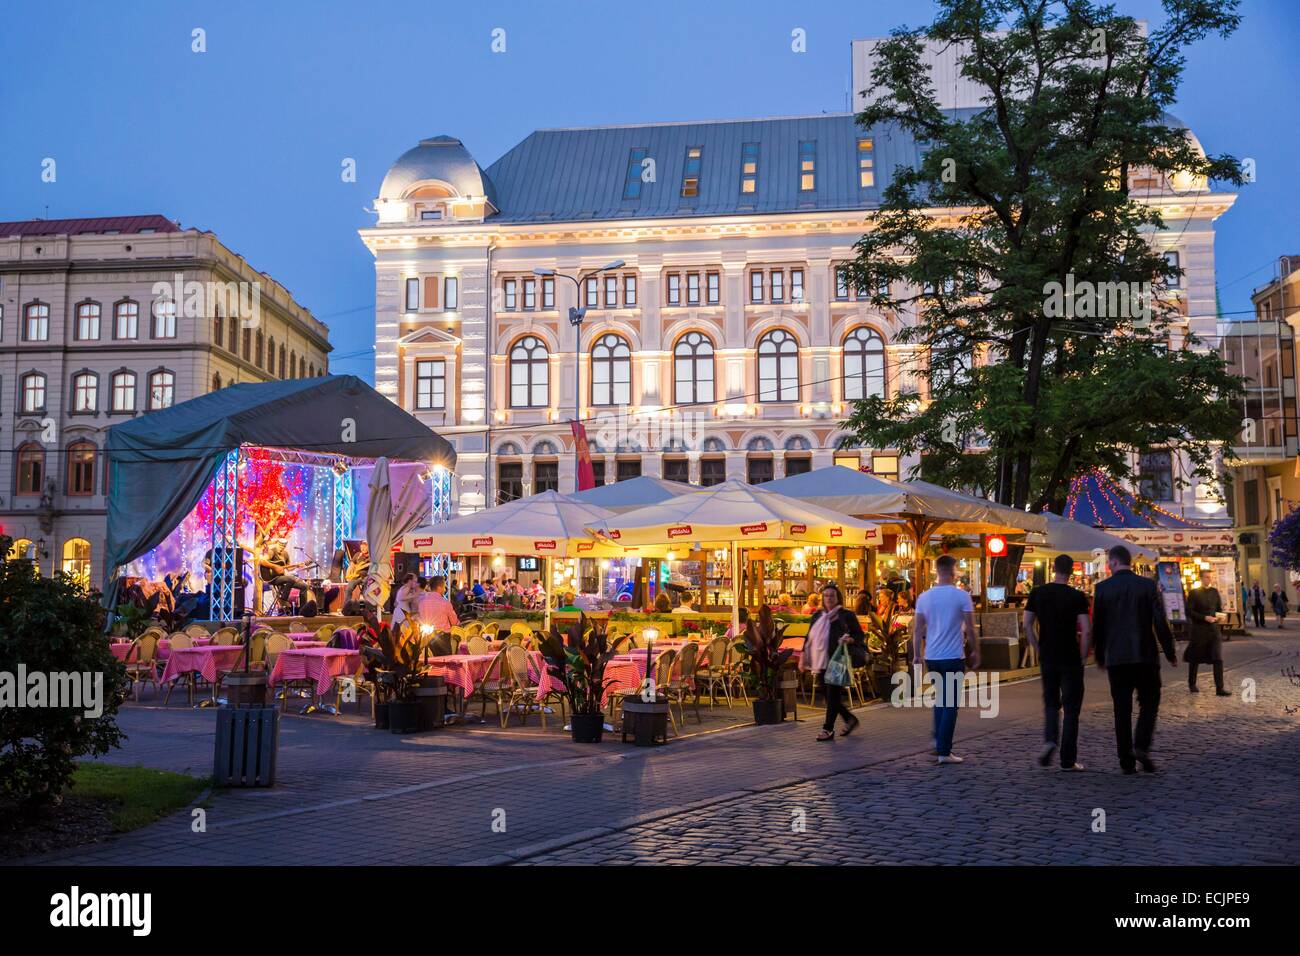 La lettonia (Paesi Baltici), Riga, capitale europea della cultura 2014, centro storico elencati come patrimonio mondiale dall' UNESCO, terrasses nel centro della città, Kalku street Foto Stock